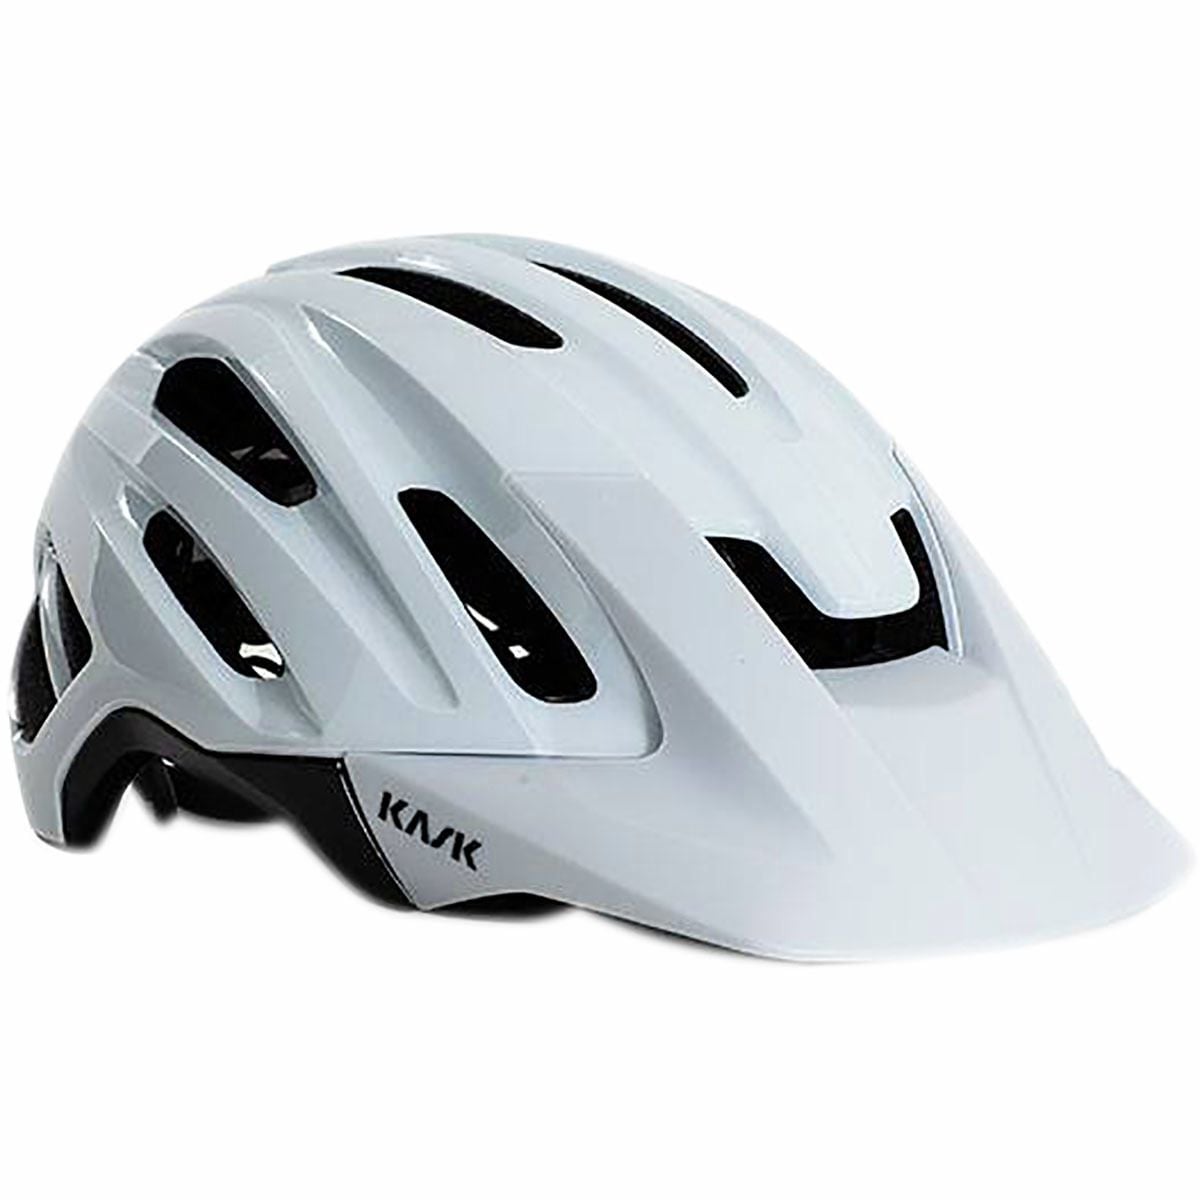 цена Велосипедный шлем caipi Kask, белый